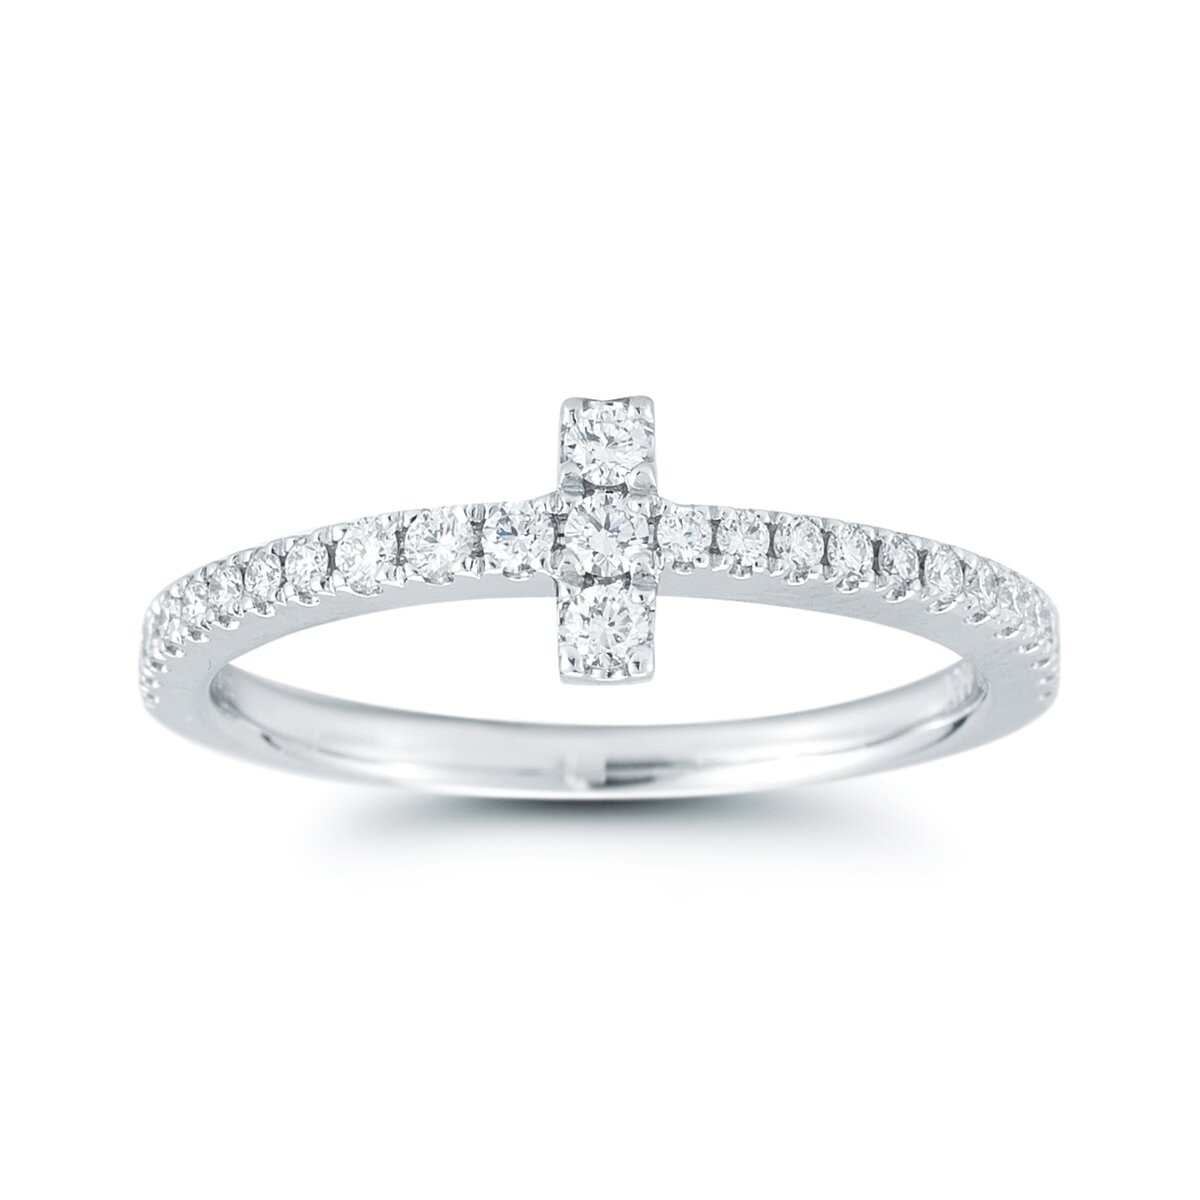 ダイヤモンド婚約指輪 サイズ直し一回無料 0.5ct E VS2 VERY-GOOD 両サイドメレ6本爪 プラチナ Pt900  婚約指輪（エンゲージリング） 婚約指輪・エンゲージリング